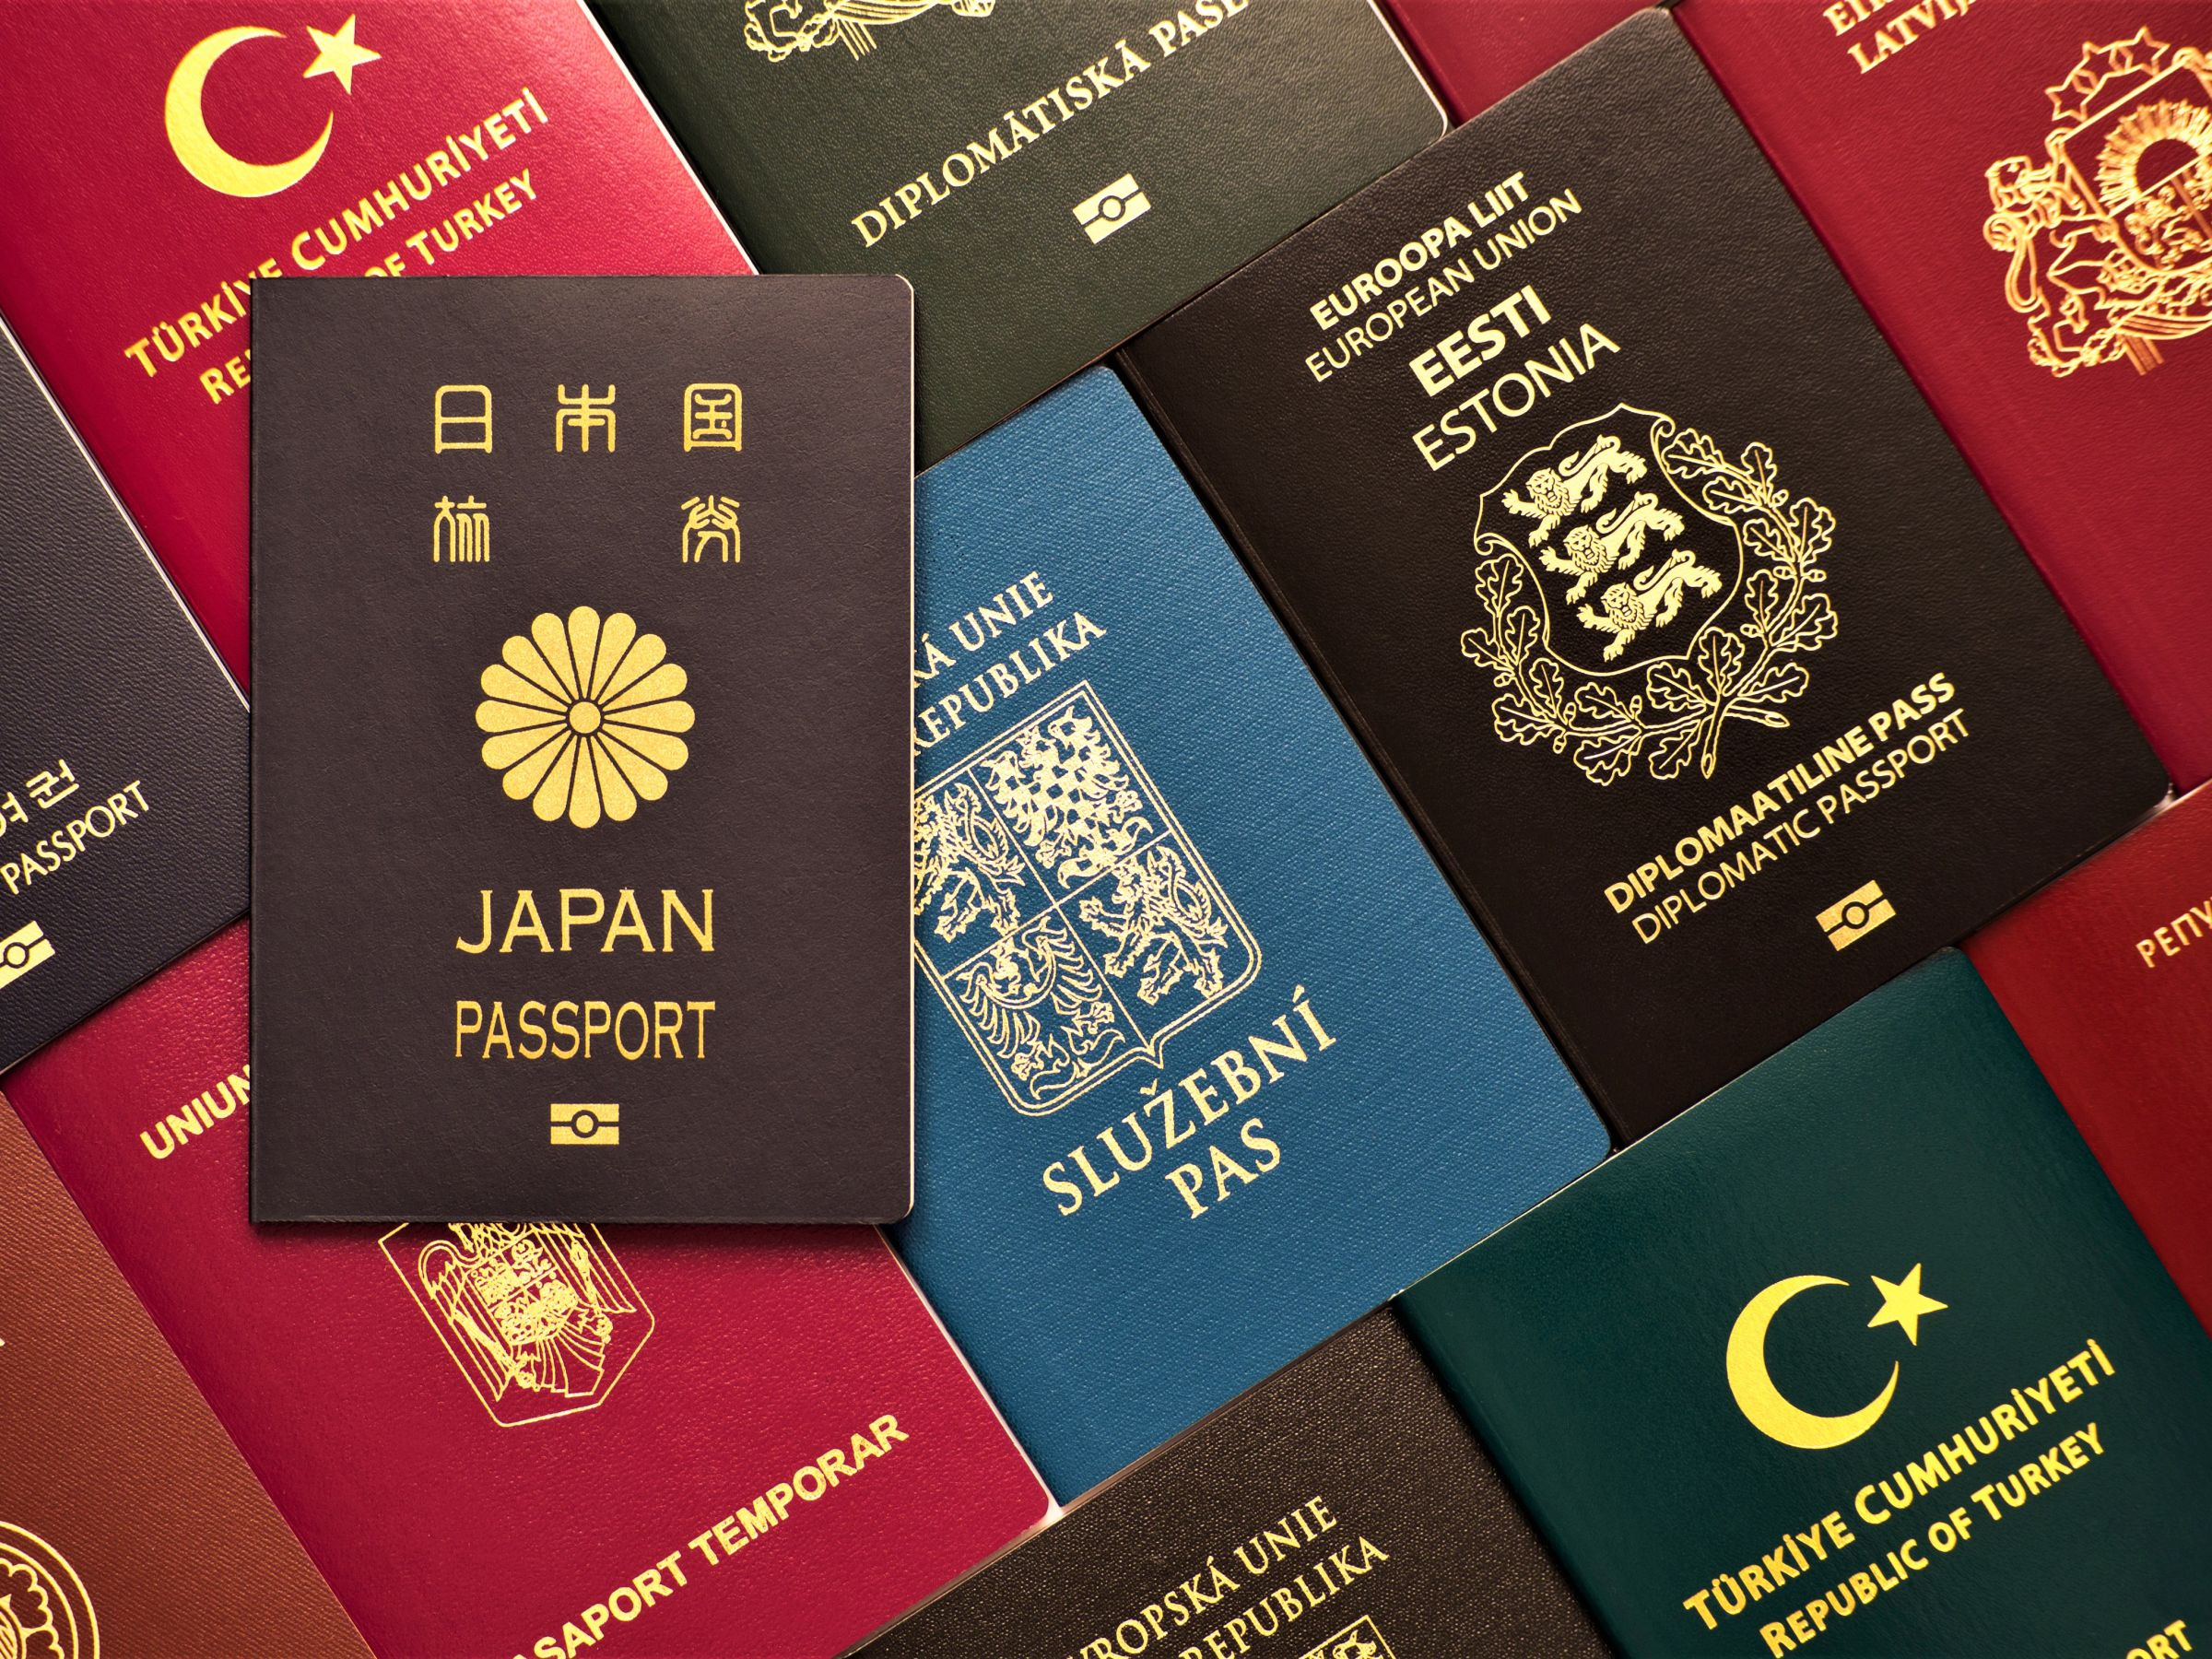 Gia hạn cư trú thêm 30 ngày cho người nước ngoài cư trú hợp pháp tại Đài Loan trên 180 ngày lần thứ 18. (Nguồn ảnh: Sở Di dân)